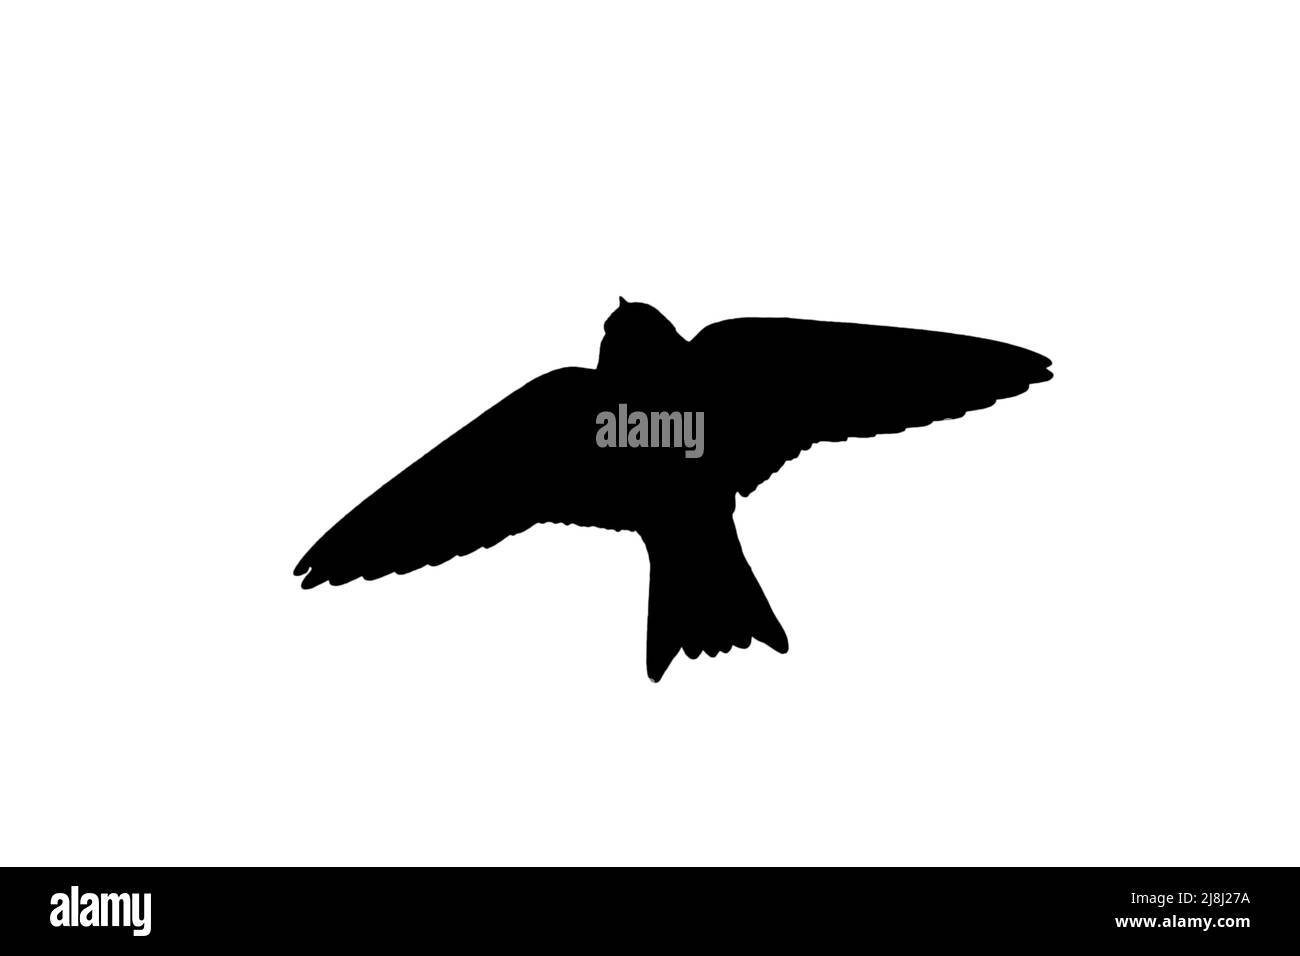 Silueta de arena europea martin / banco trague (Riparia riparia) en vuelo contorneado sobre fondo blanco para mostrar alas, cabeza y cola formas Foto de stock